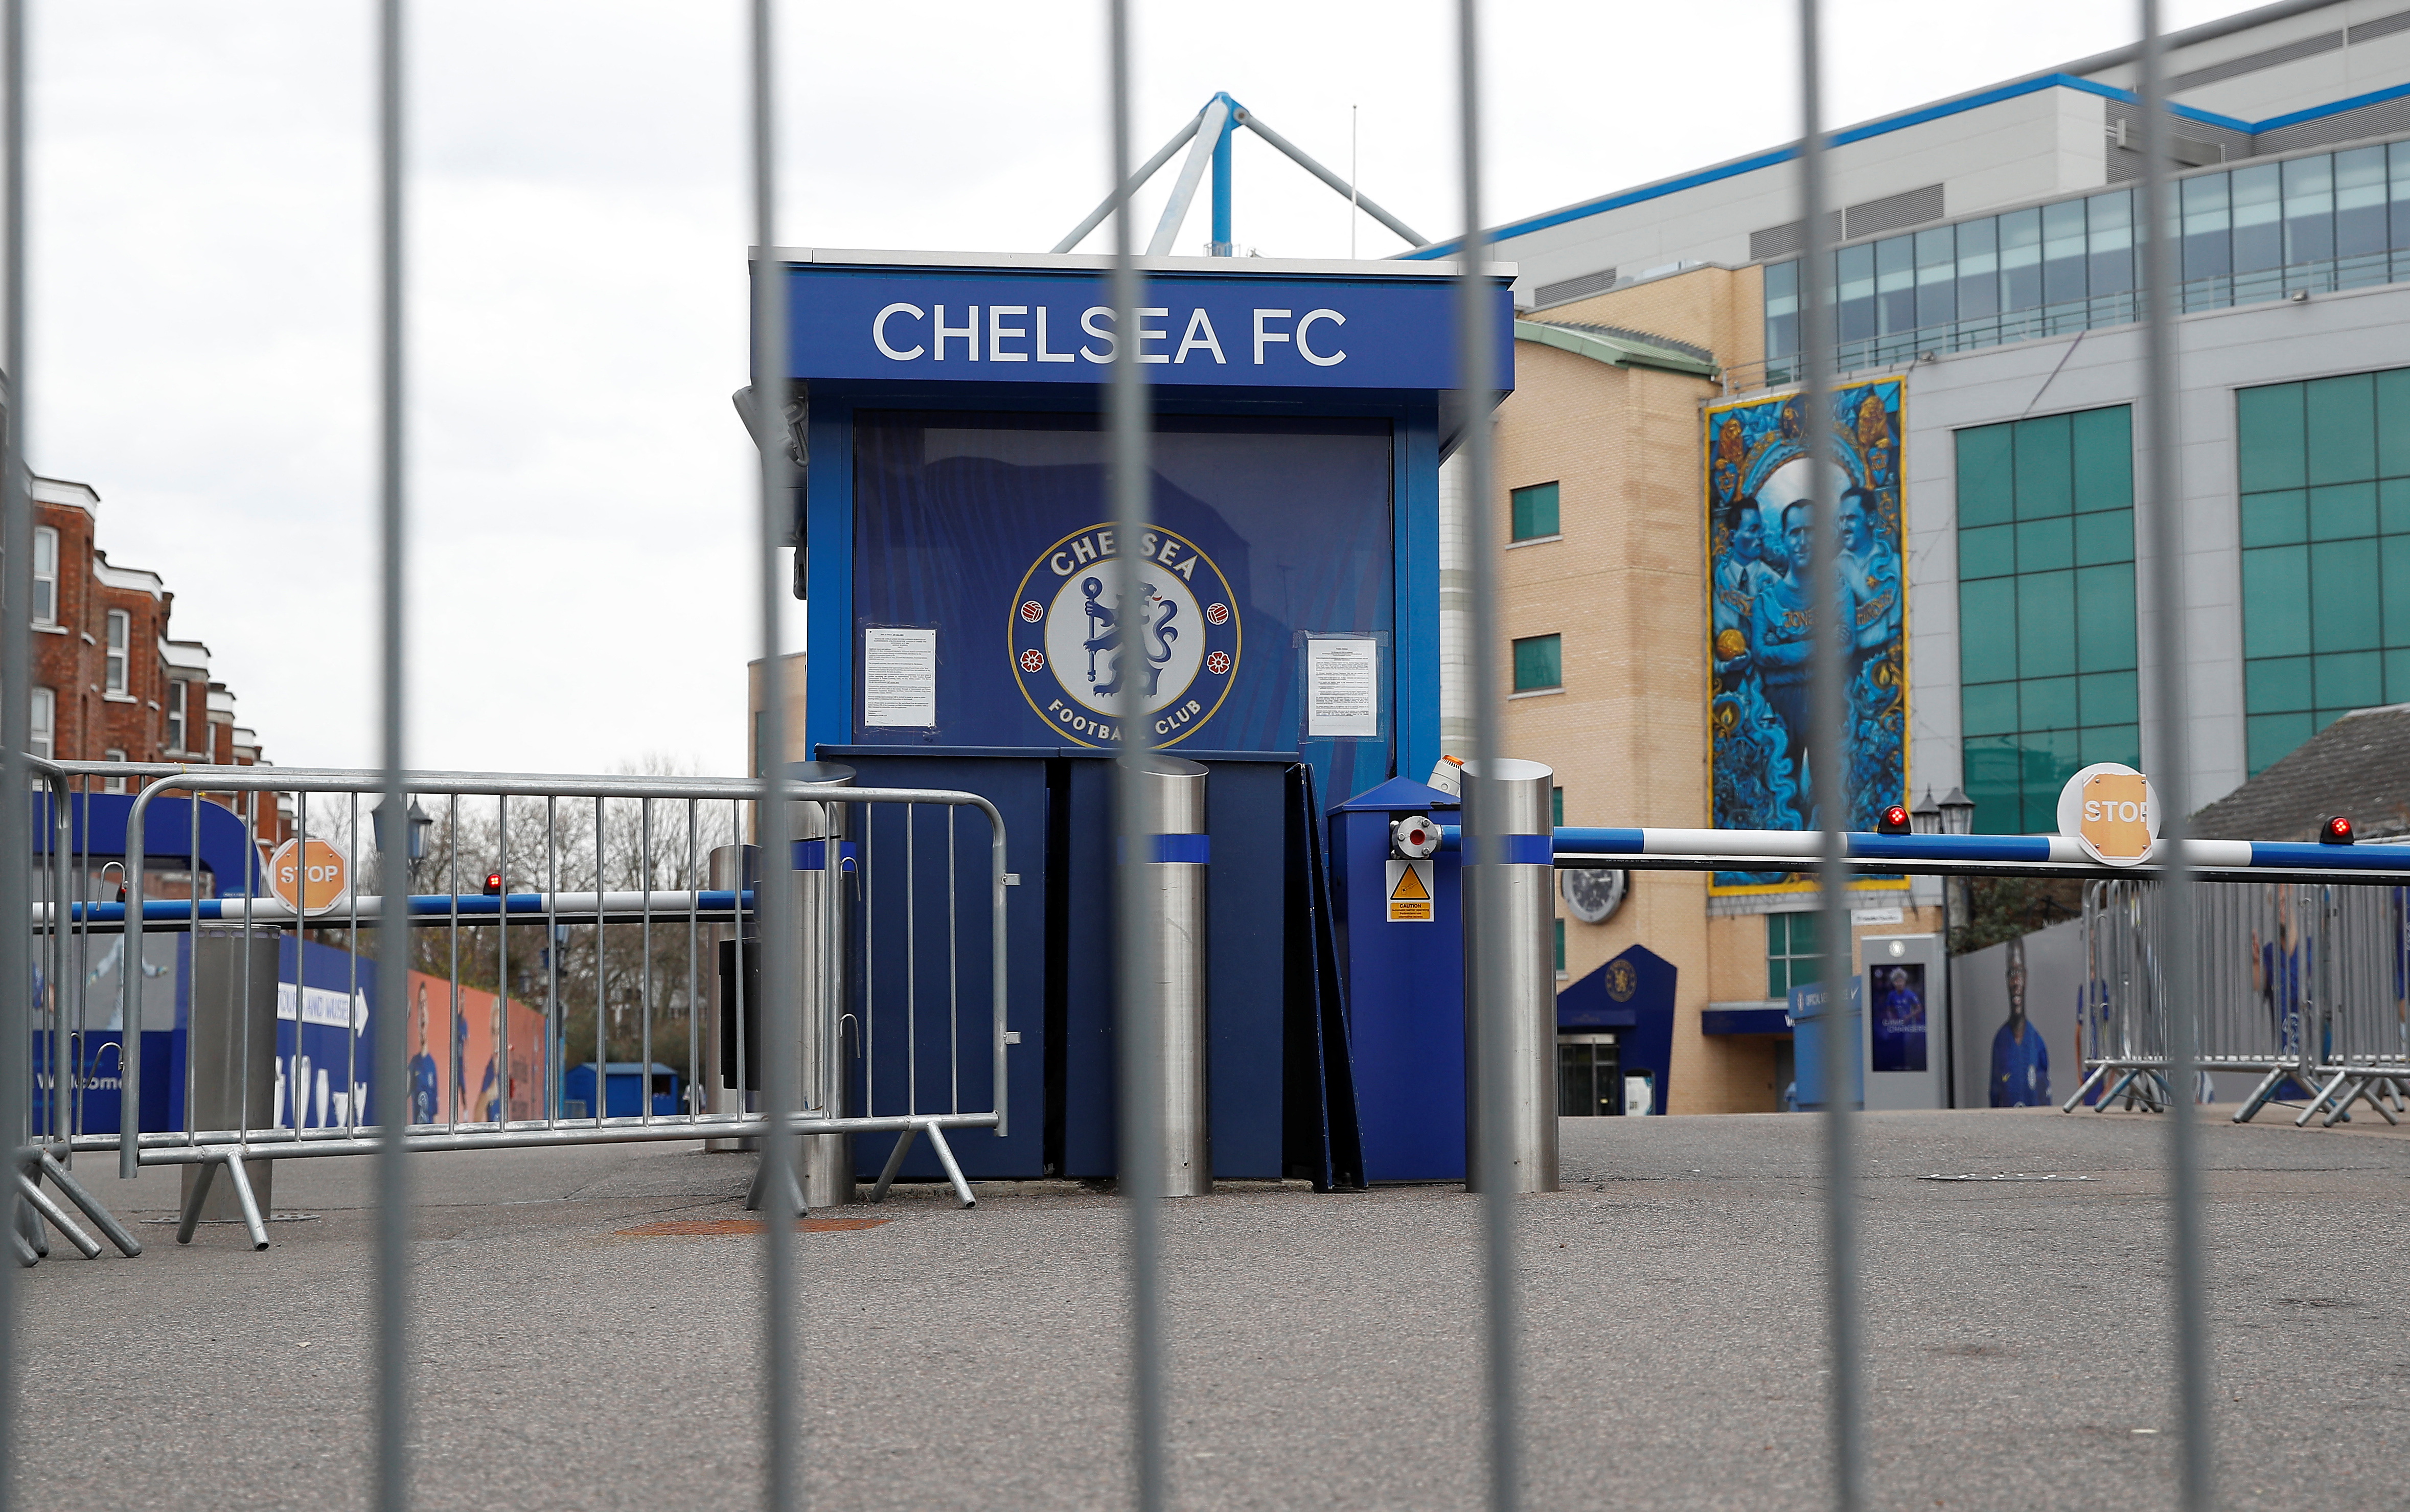 El pasado 12 de marzo, la Premier League anunció la destitución de Abramovich como titular del Chelsea (REUTERS/Peter Nicholls)